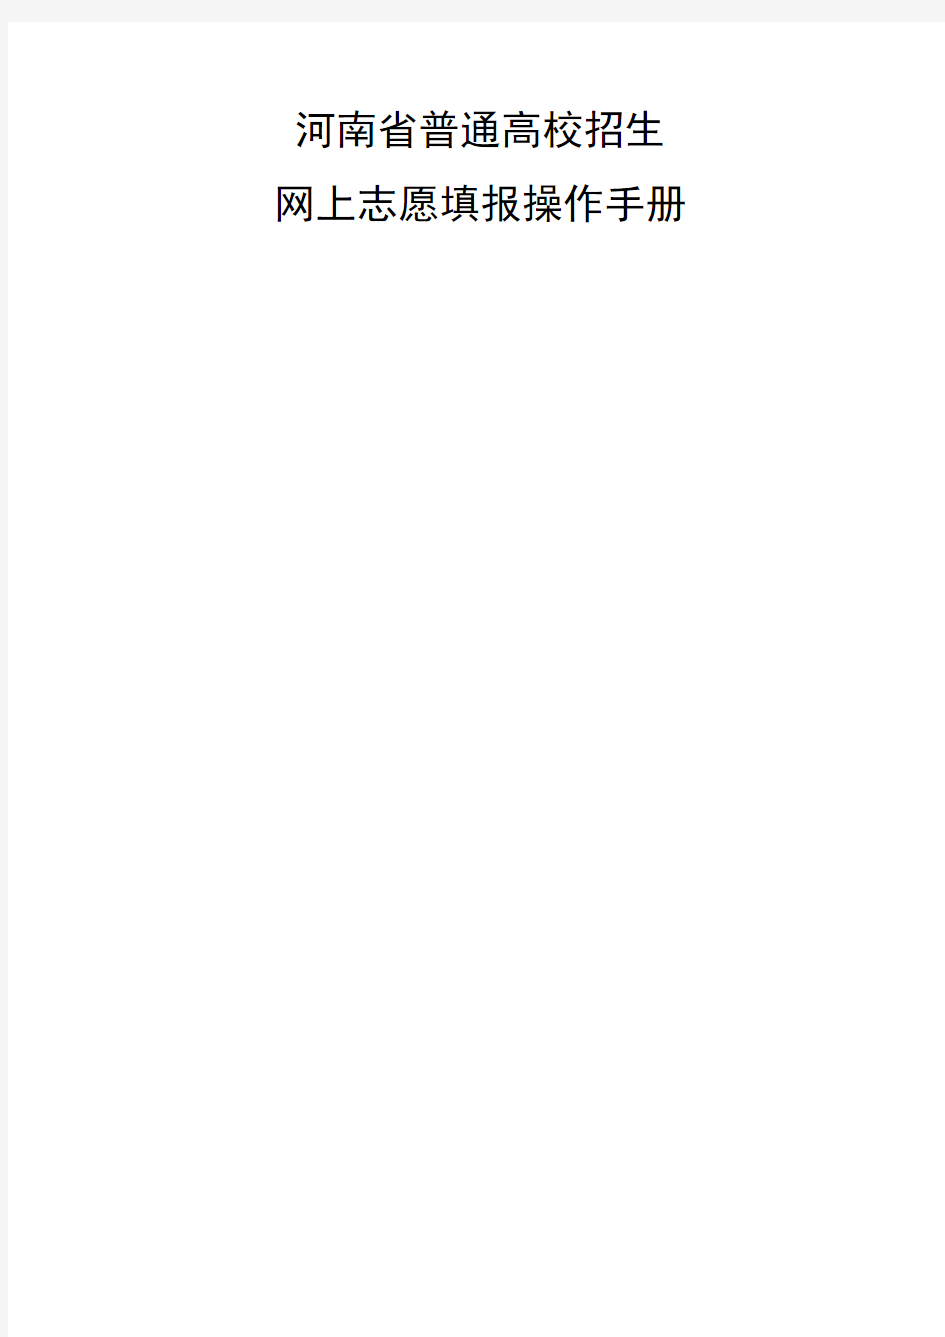 河南省普通高校招生网上志愿填报操作手册